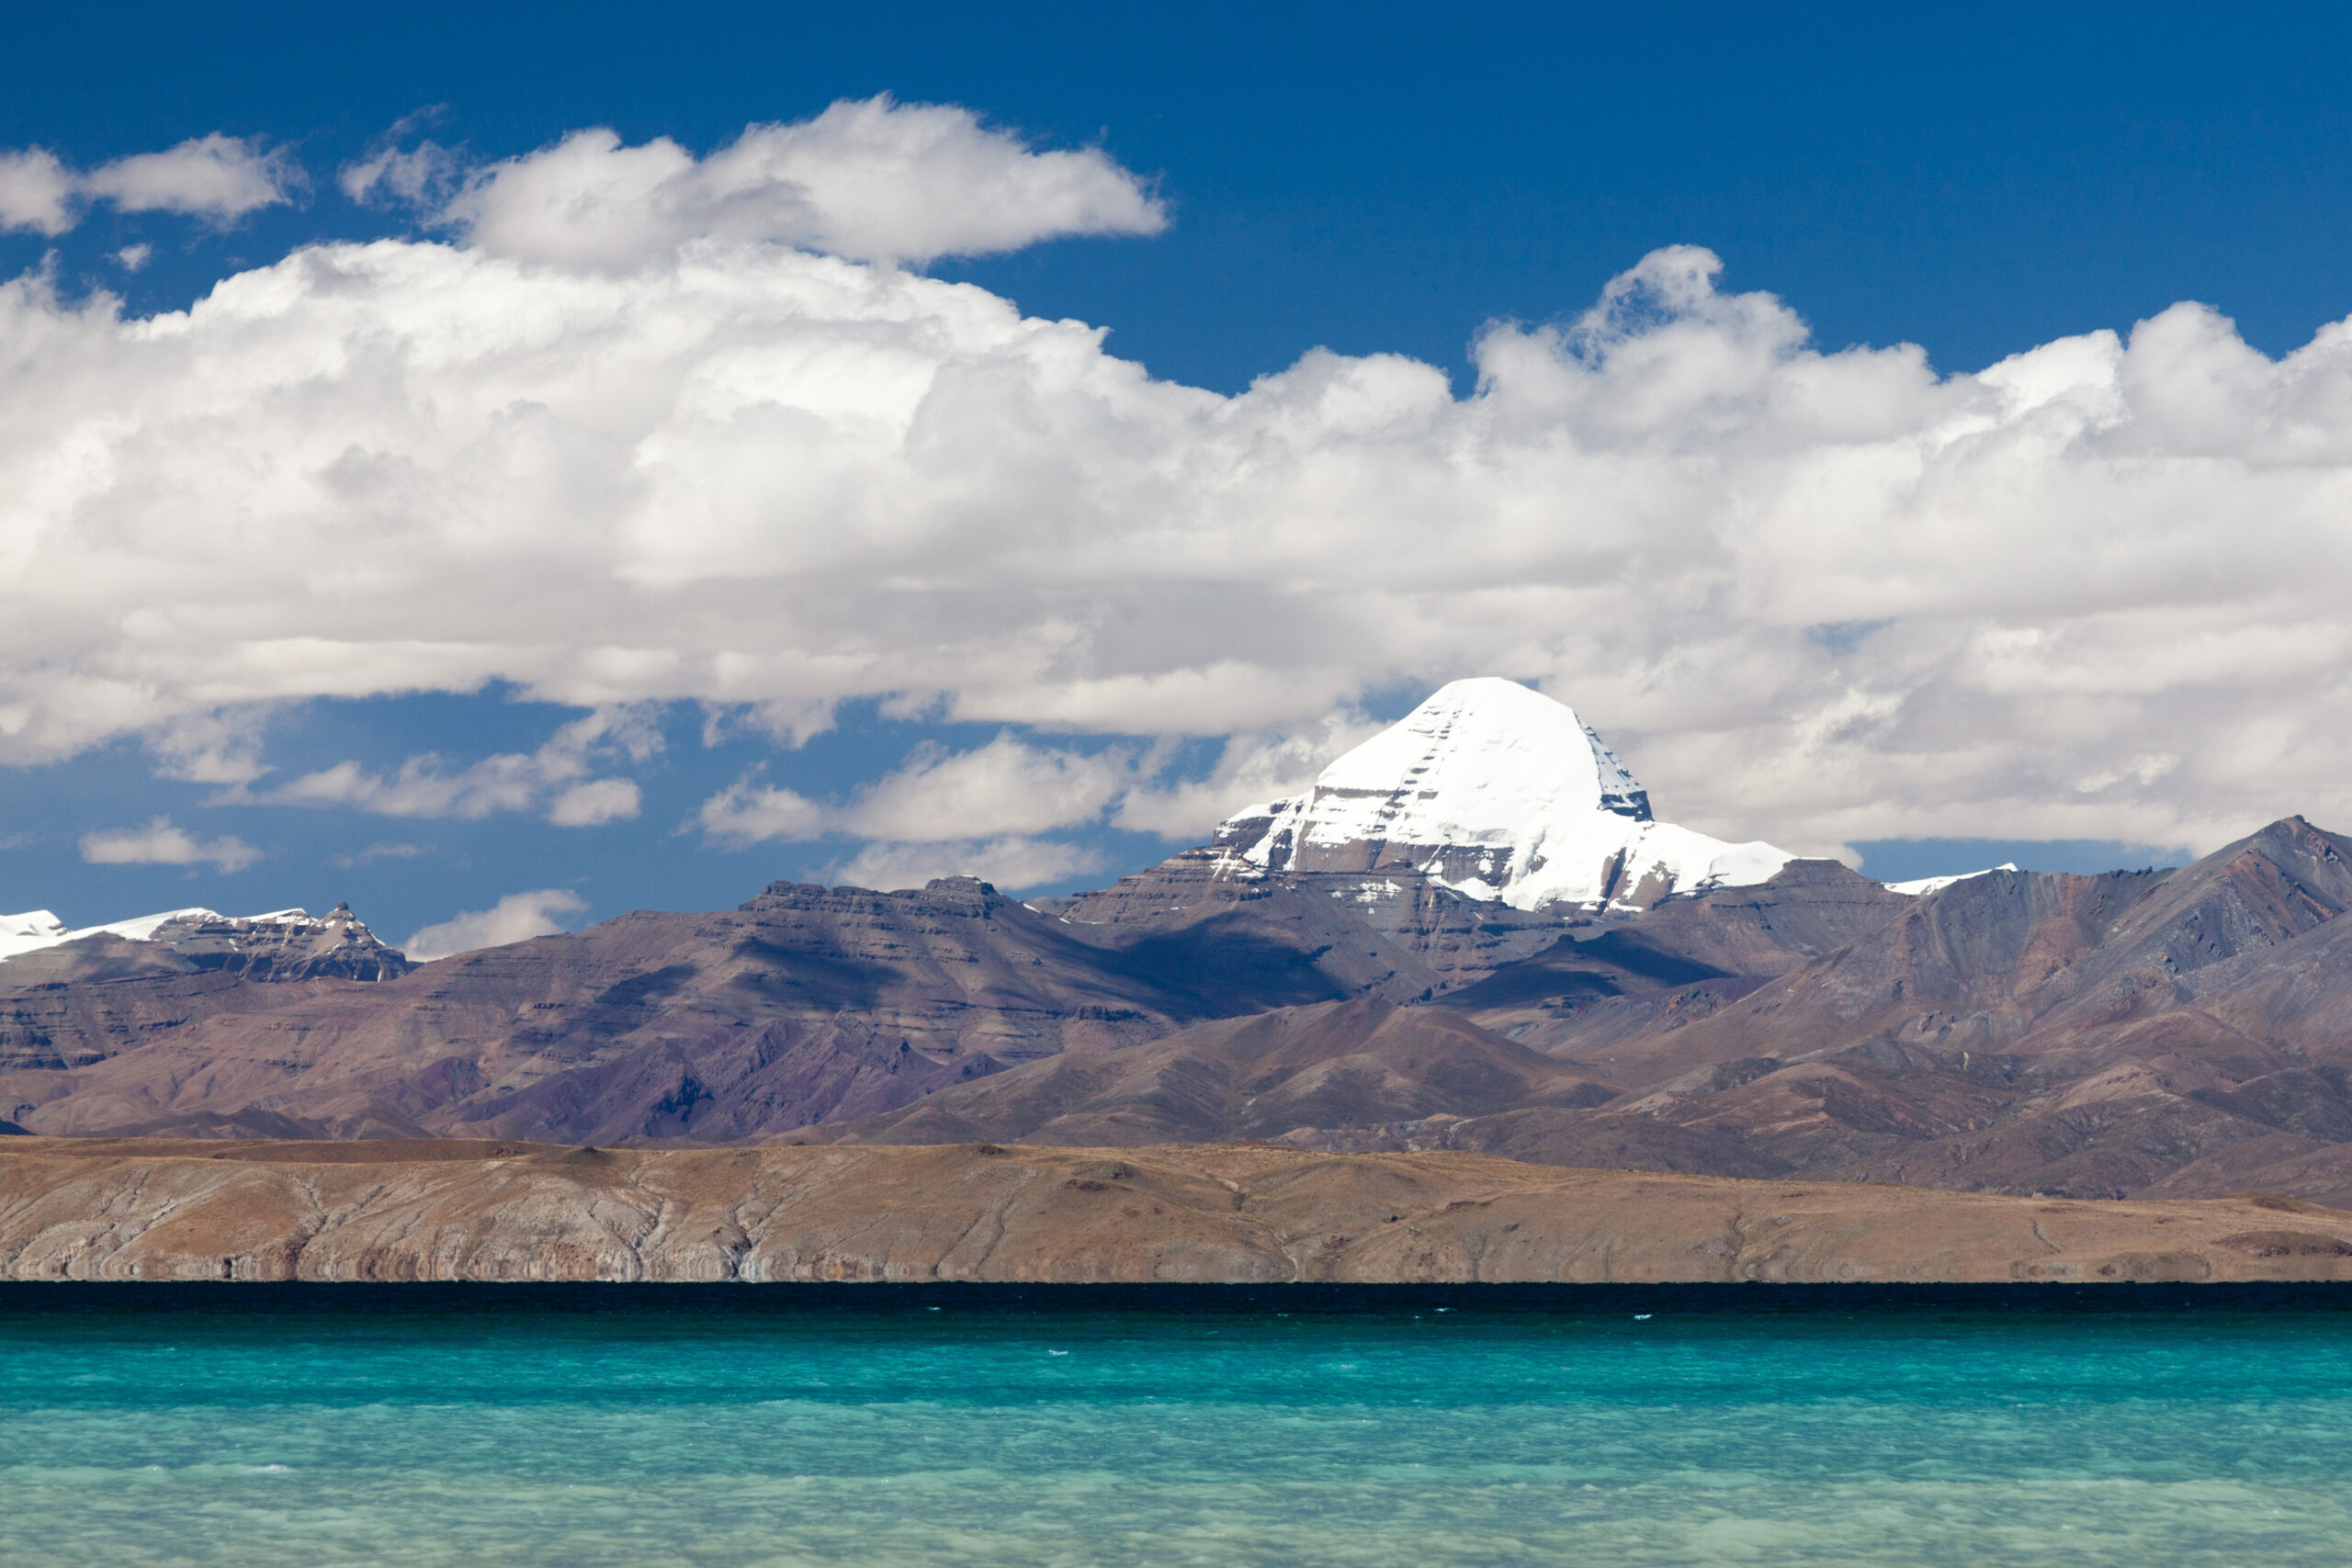 Mt. Kailash and Lake Mansarovar